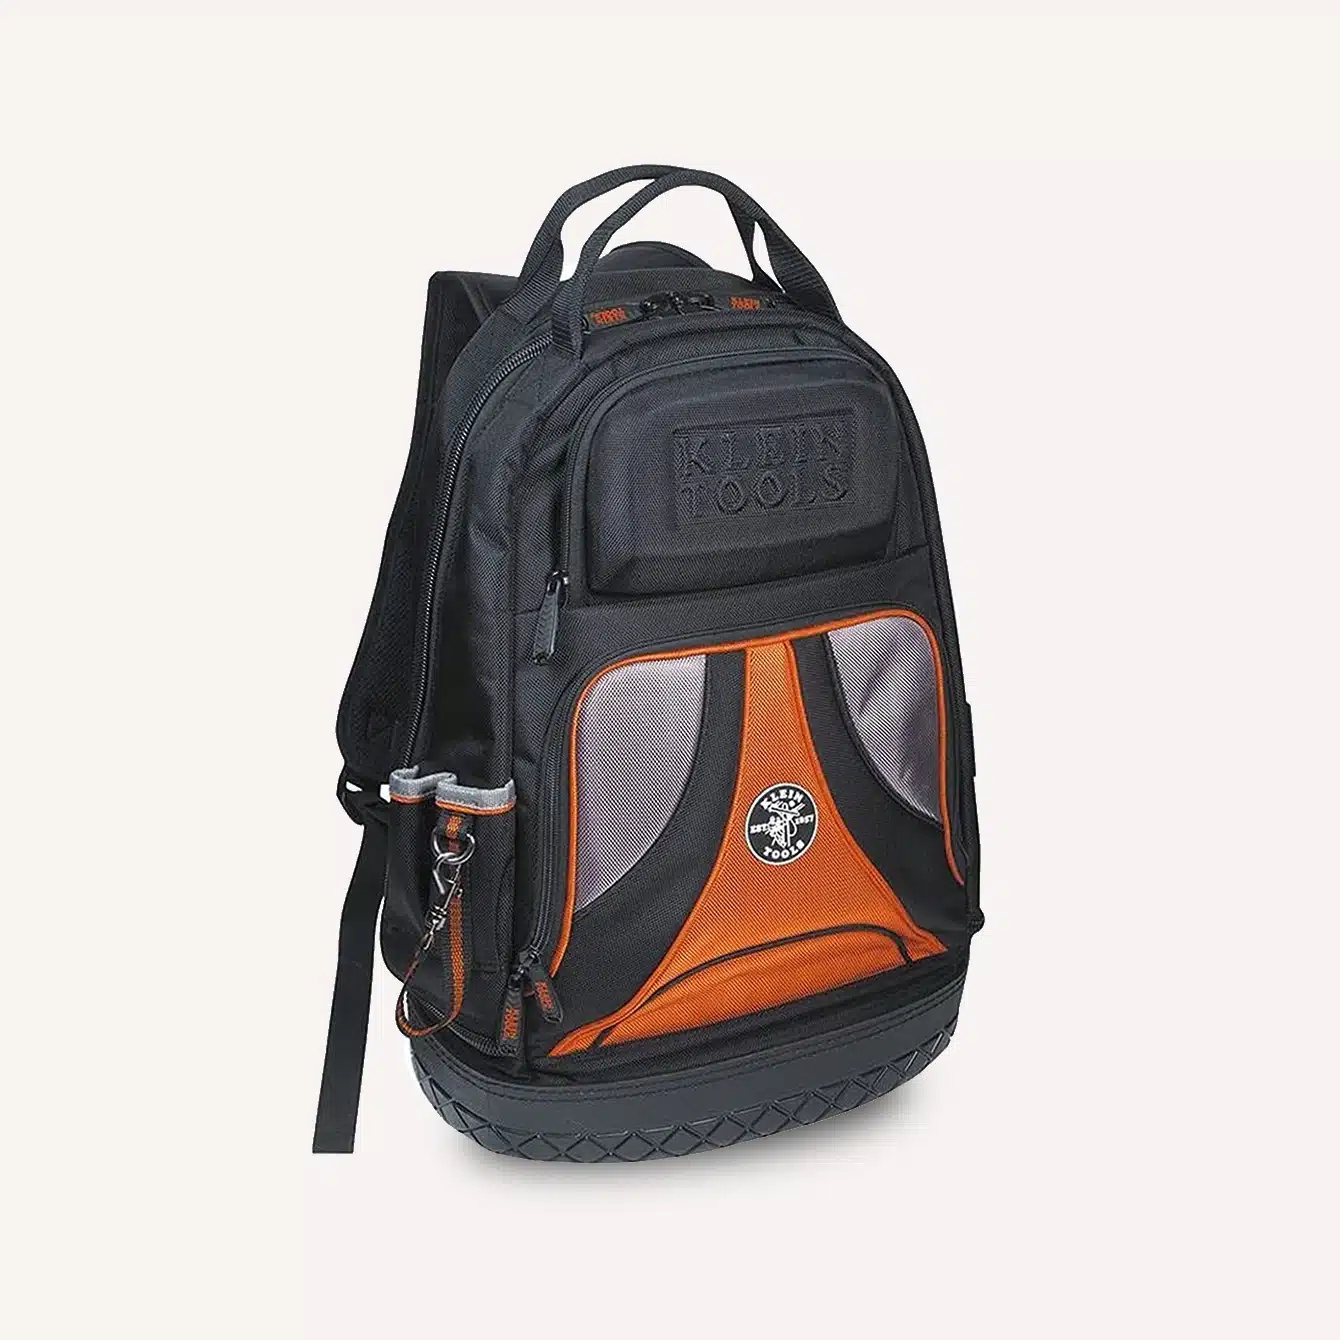 Klein Tools 55421BP 14 Tool Bag Backpack